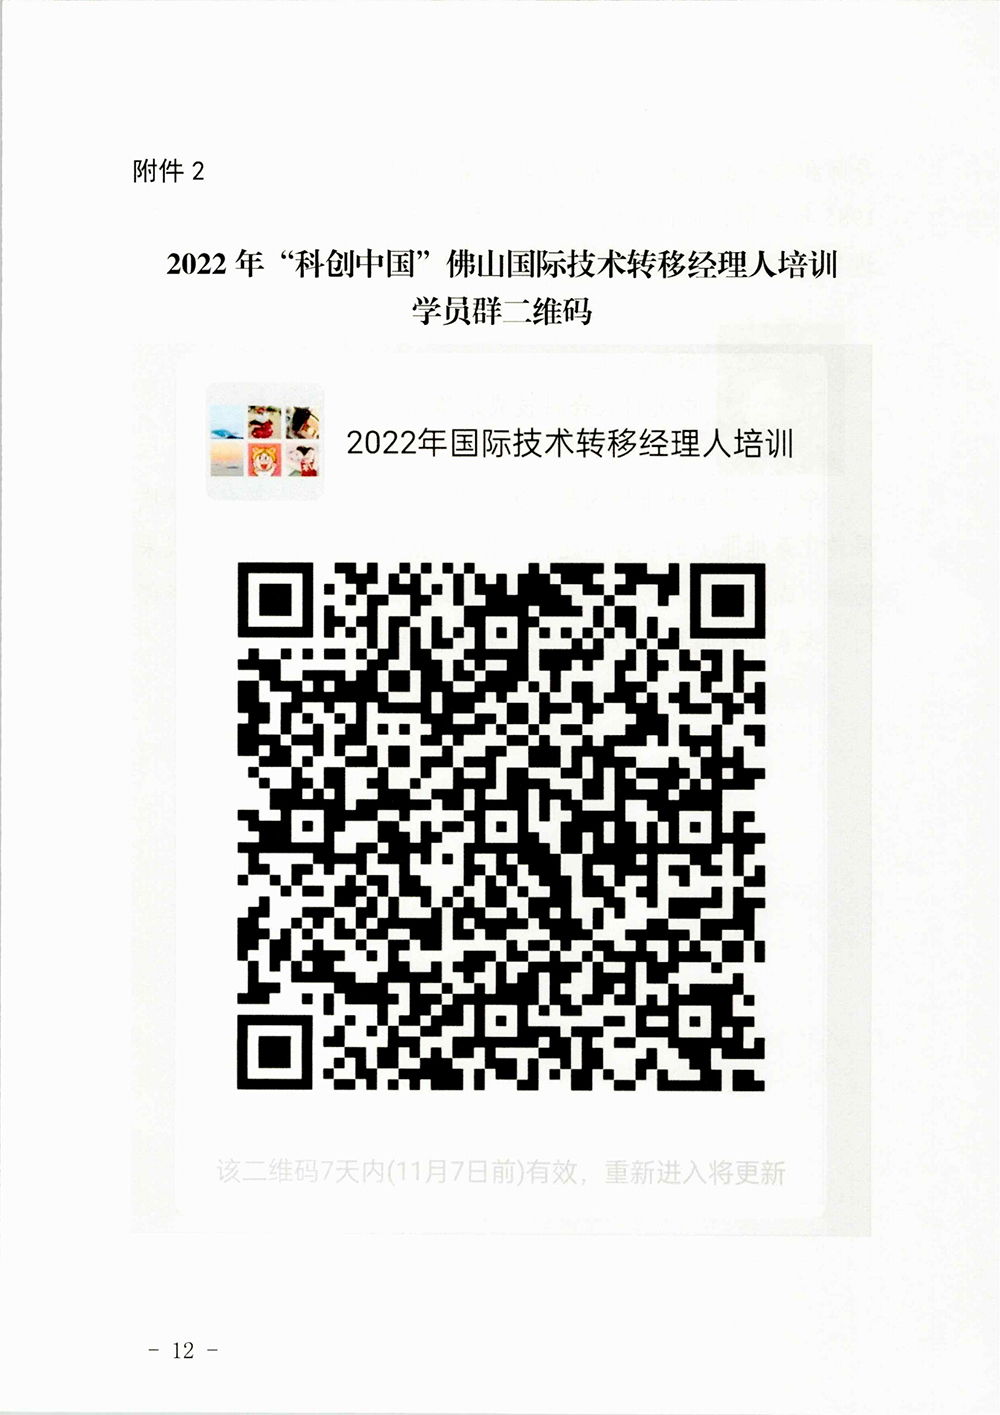 2022年“科创中国”佛山国际技术转移经理人培训开班通知_11.png